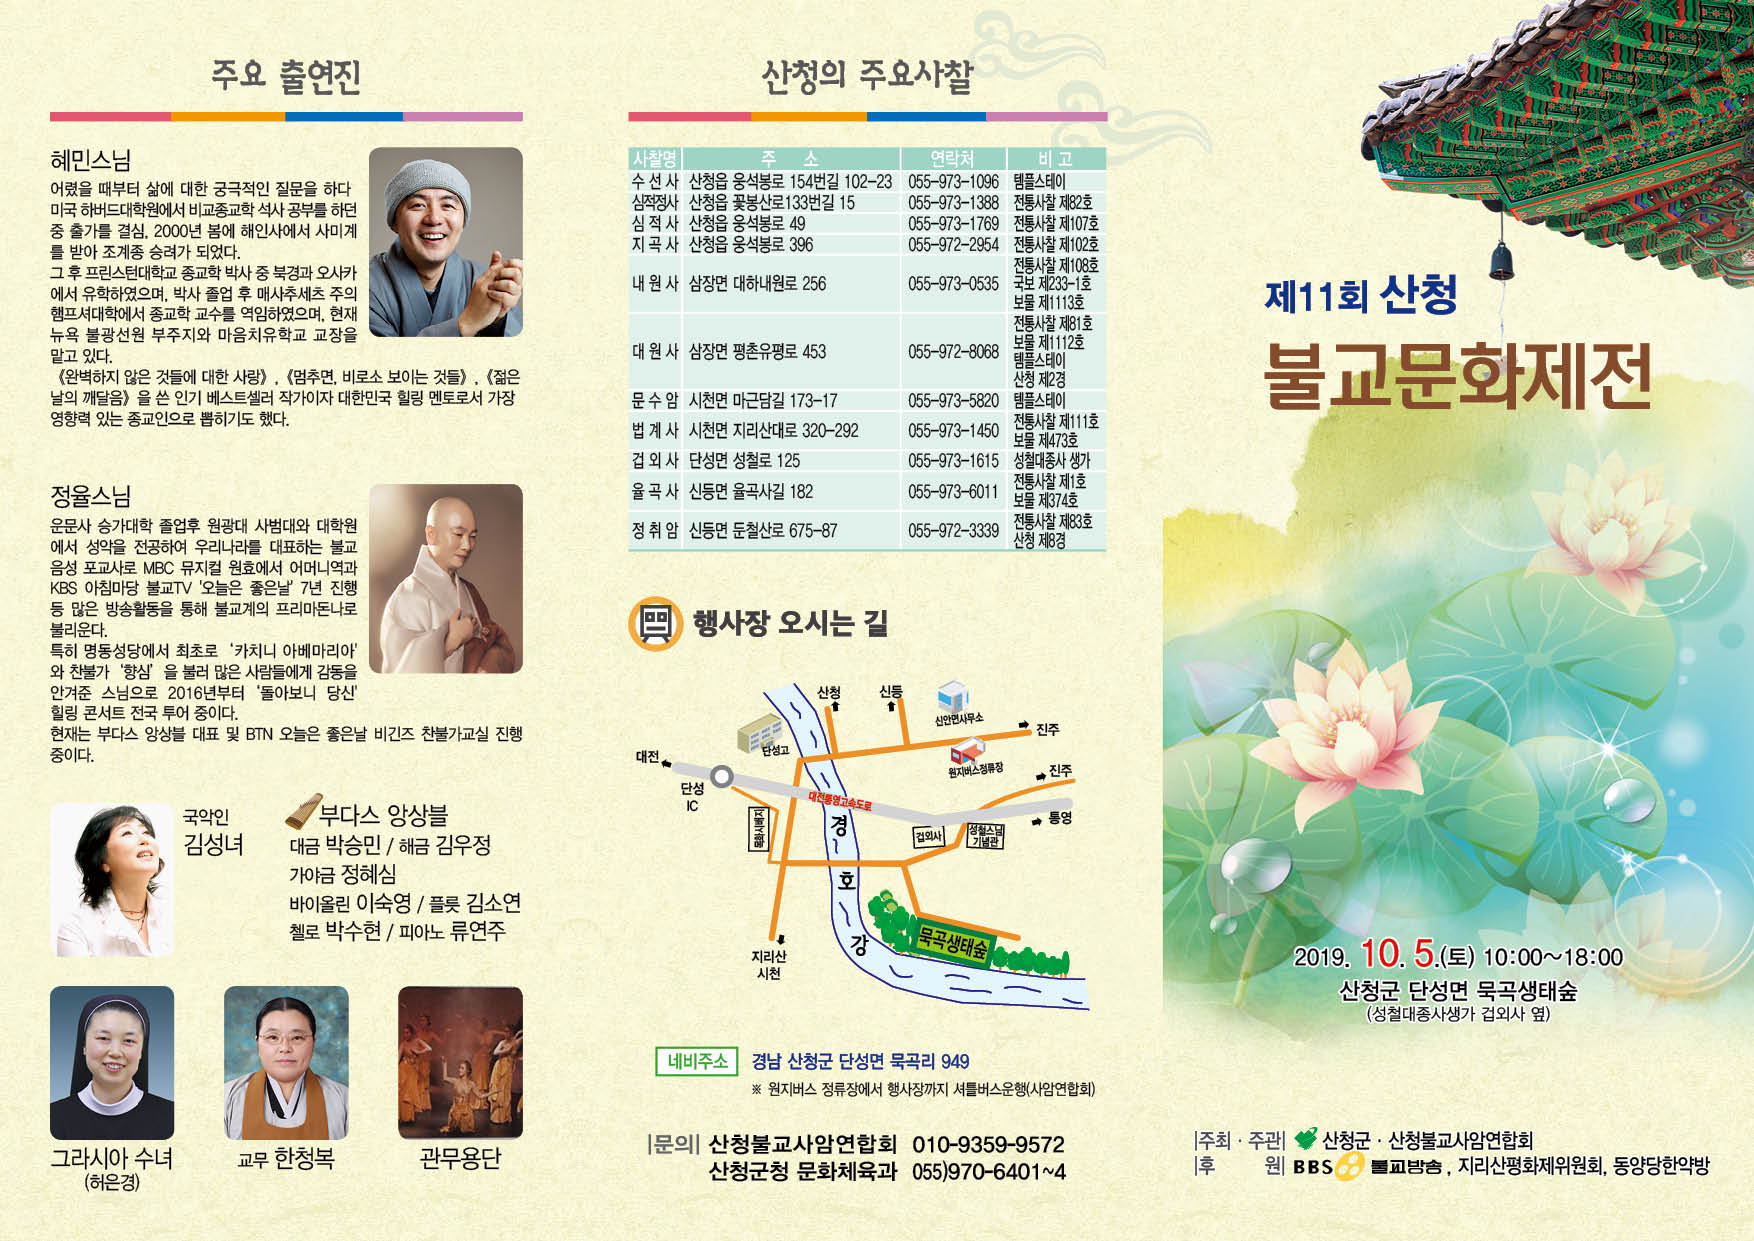 제11회 산청불교문화제전 개최 안내 (10월 5일) 1